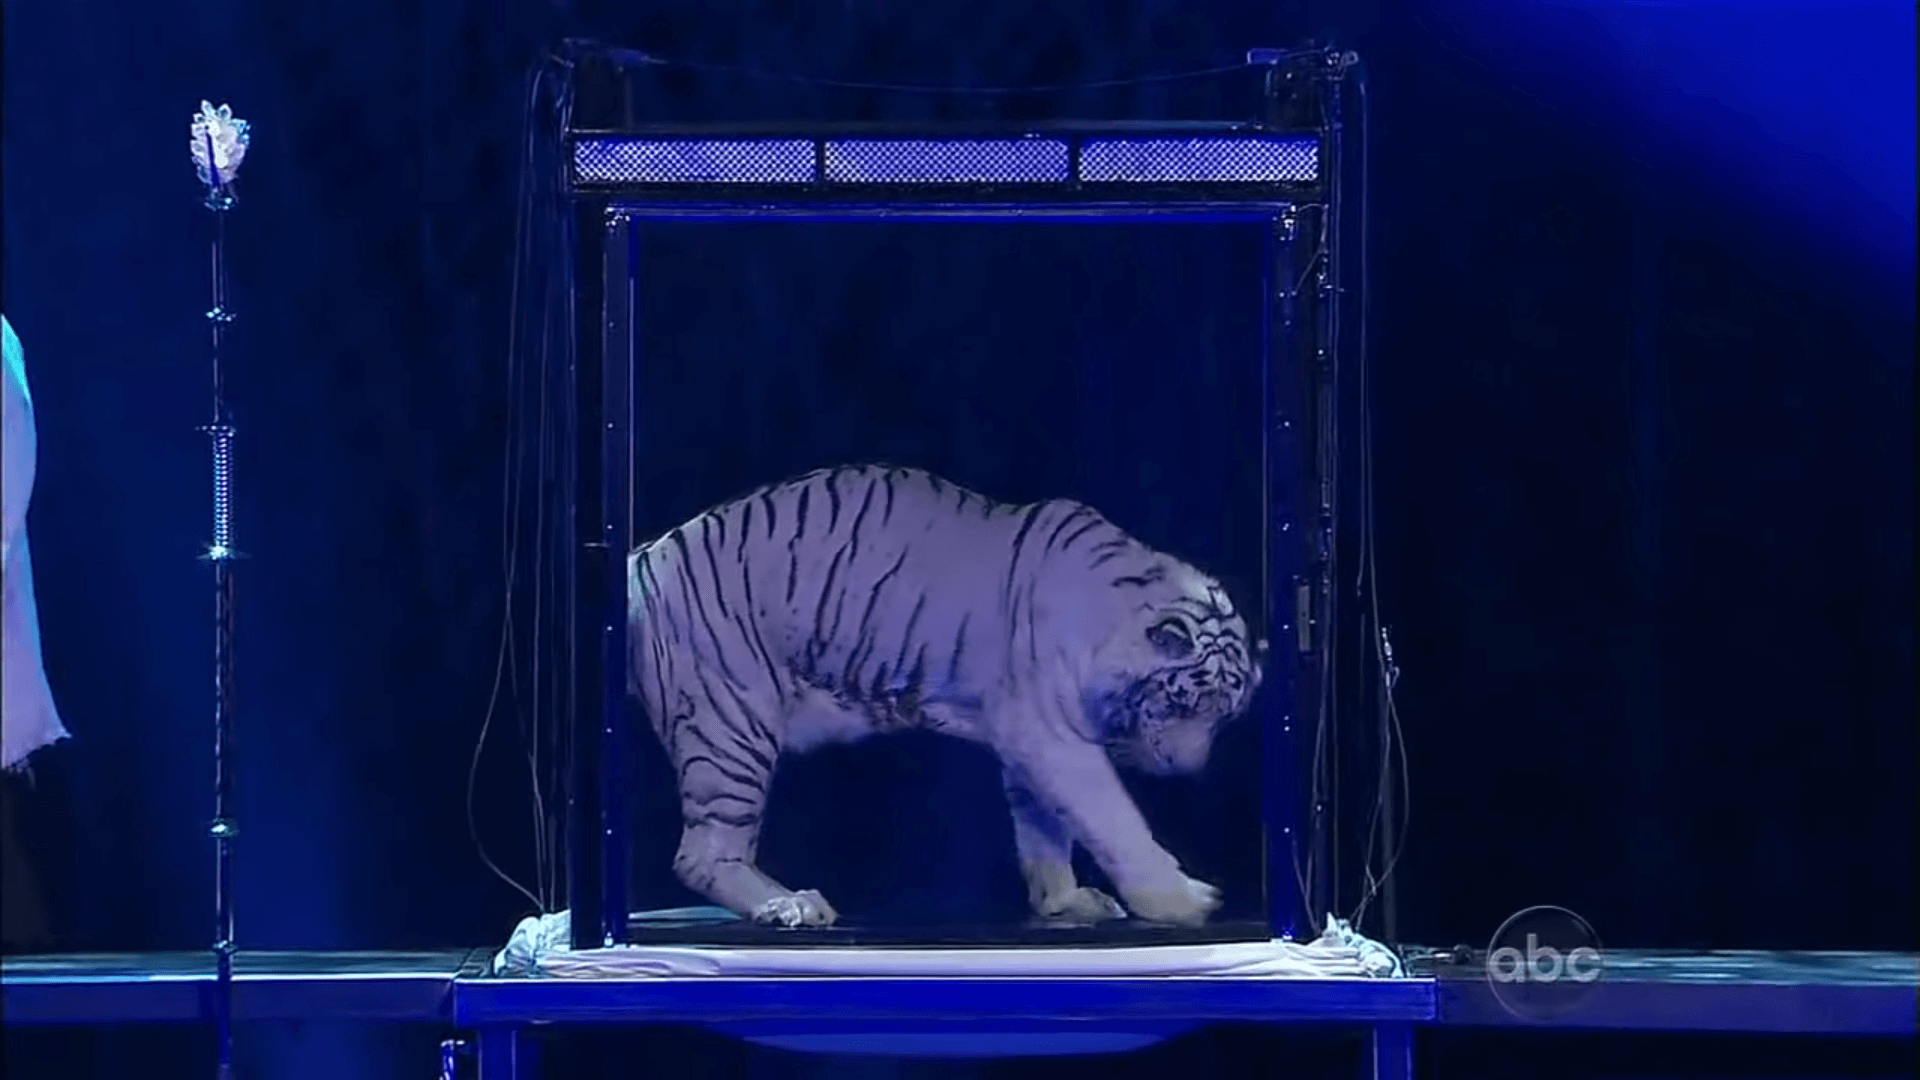 Obligate goocheltruc met tijger door Siegfried and Roy in The Mirage | Foto: screenshot video CBS via MagicTV/YouTube